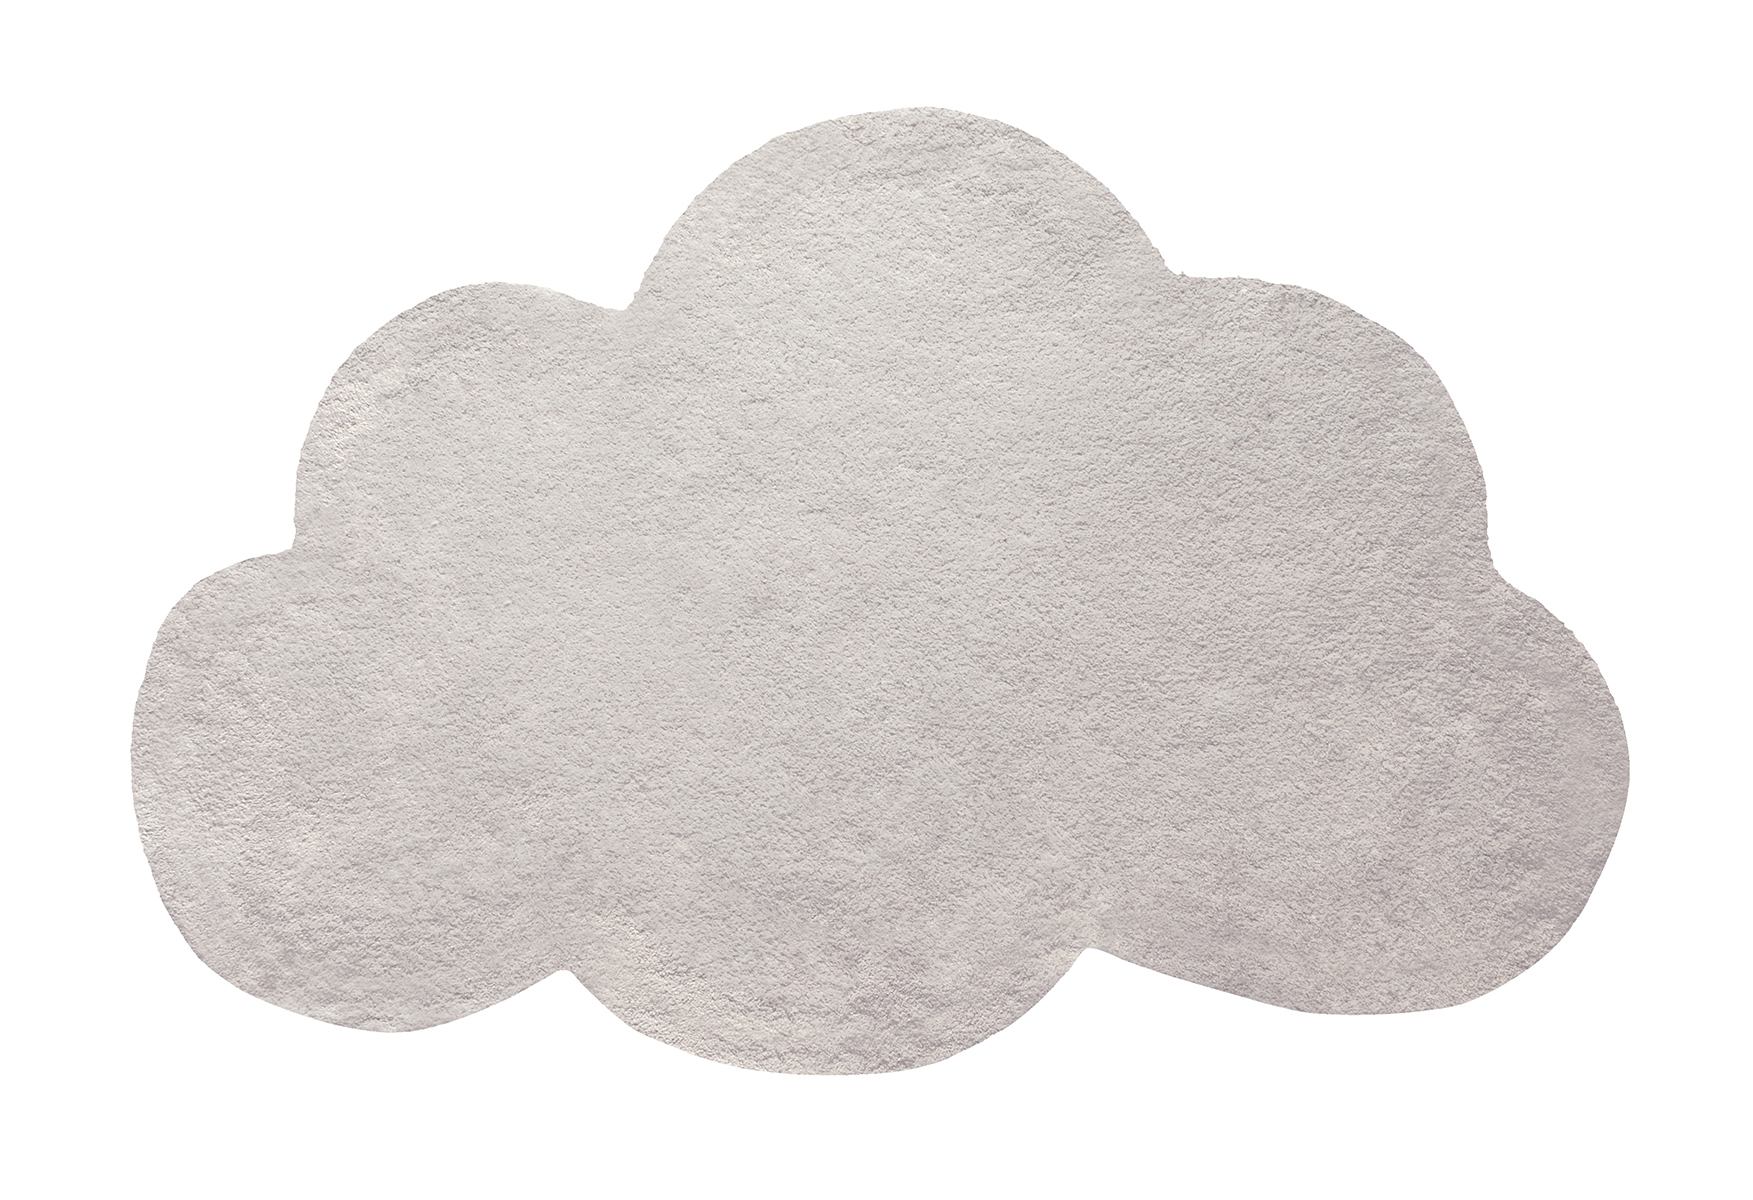 Felhő alakú szőnyeg - bézs, Lilipinso